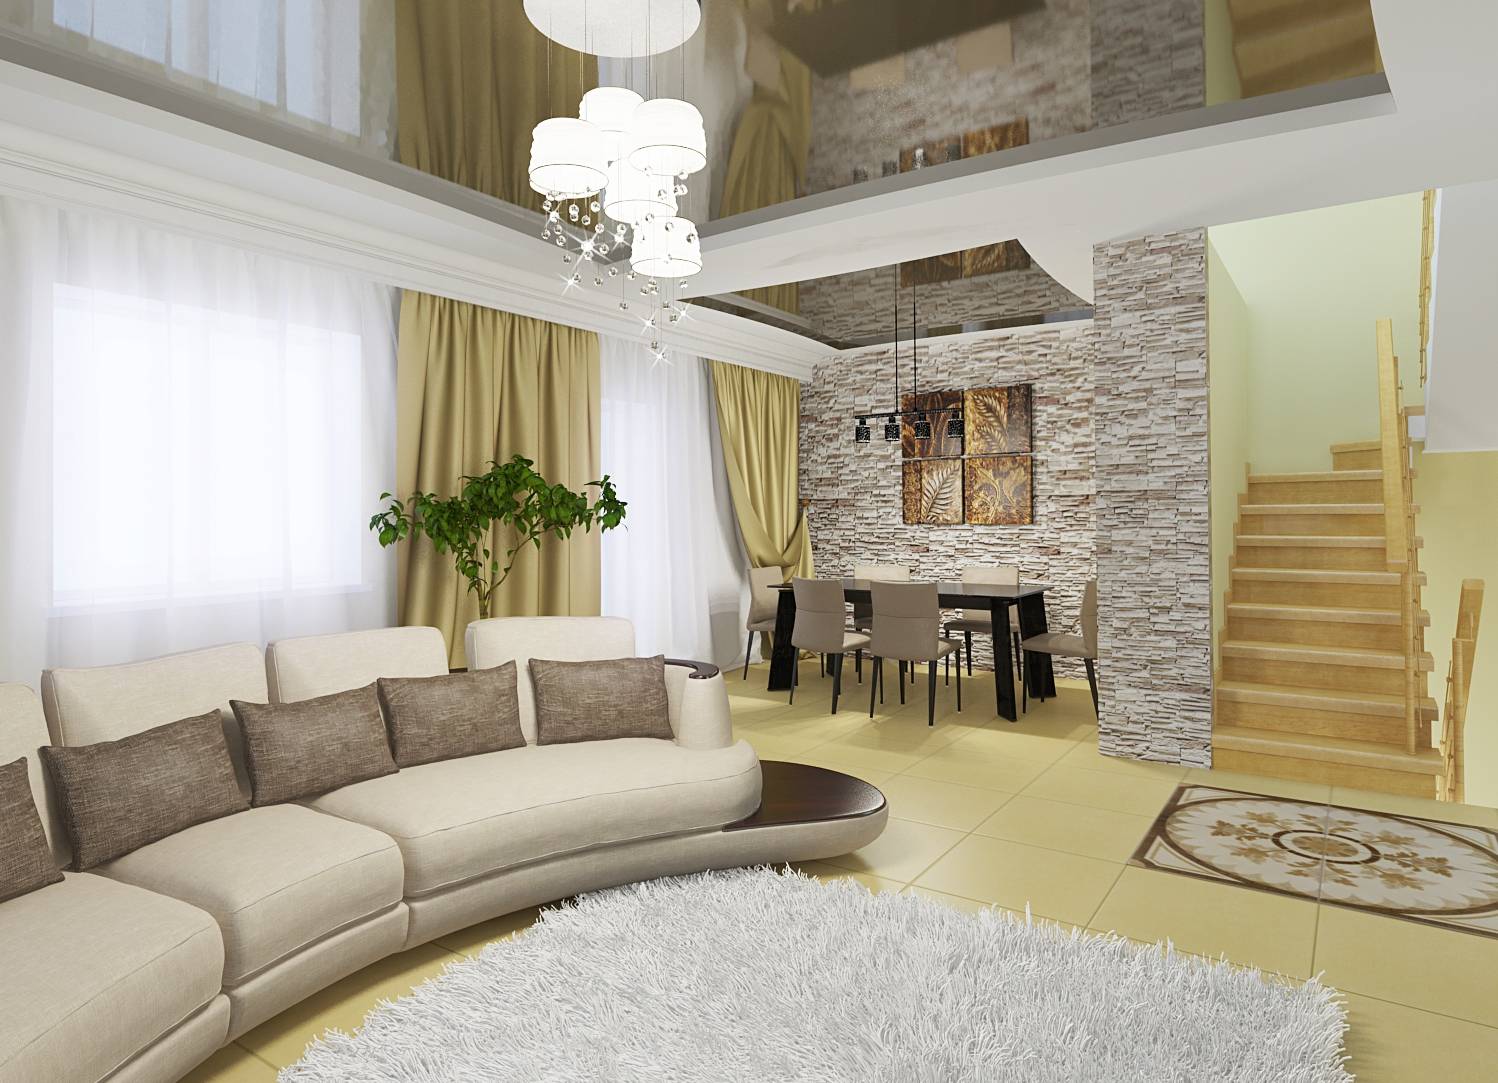 Особенности дизайна зала в квартире: мебель, освещение, отделочные материалы